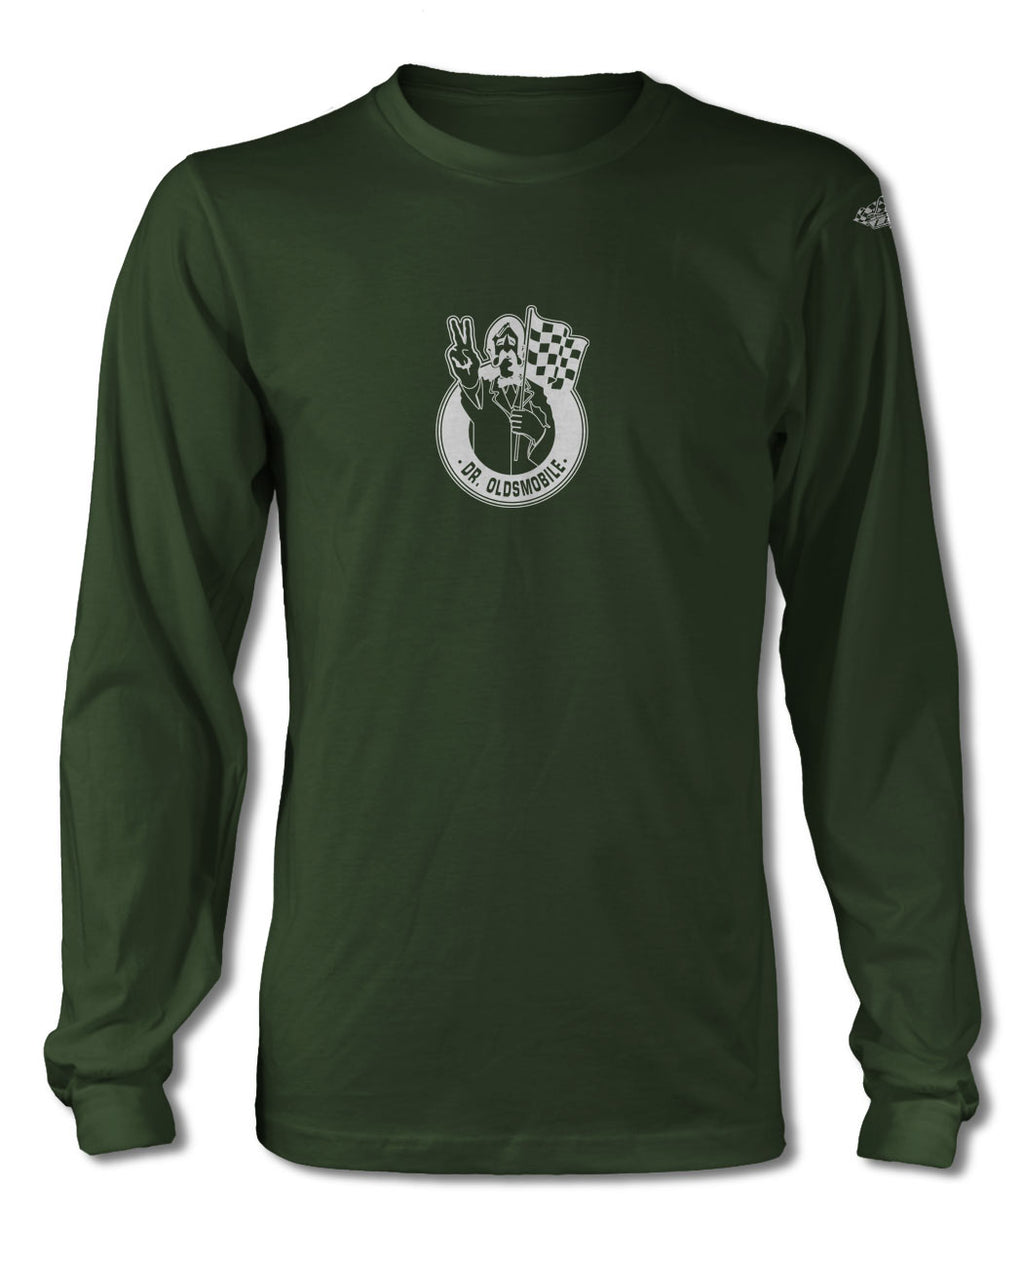 Dr. Oldsmobile Emblem 1969 T-Shirt - Long Sleeves - Emblem